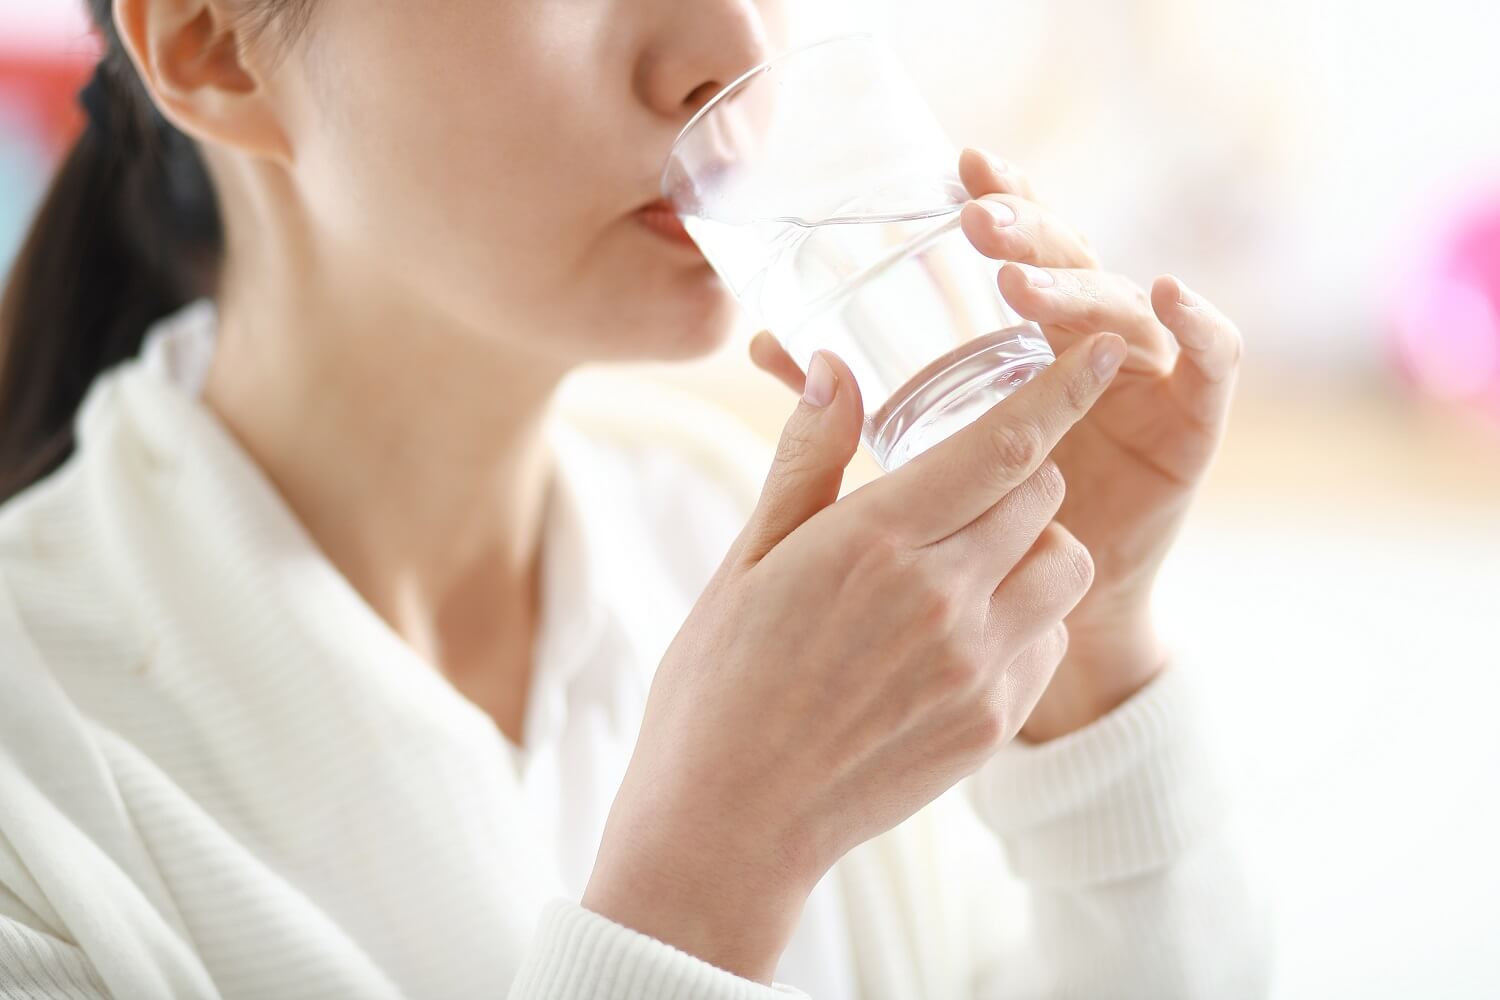 Uống nhiều nước để loại bỏ vi khuẩn và chất cặn bã trong nước tiểu